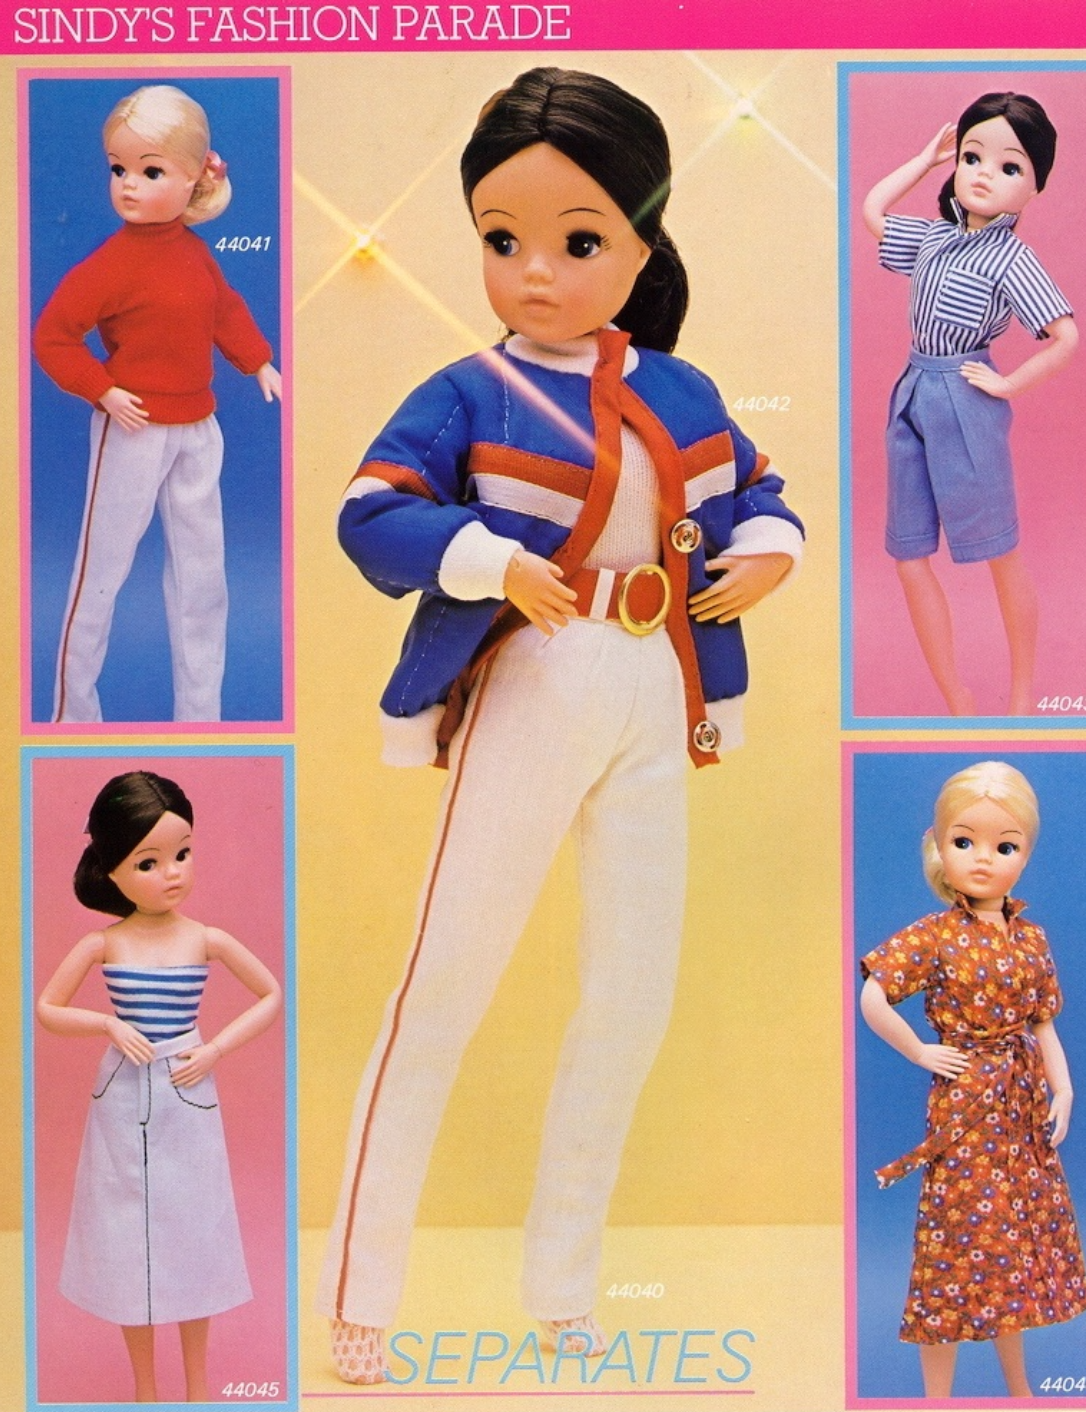 1982 Pedigree Sindy Doll Separates Fashion Range